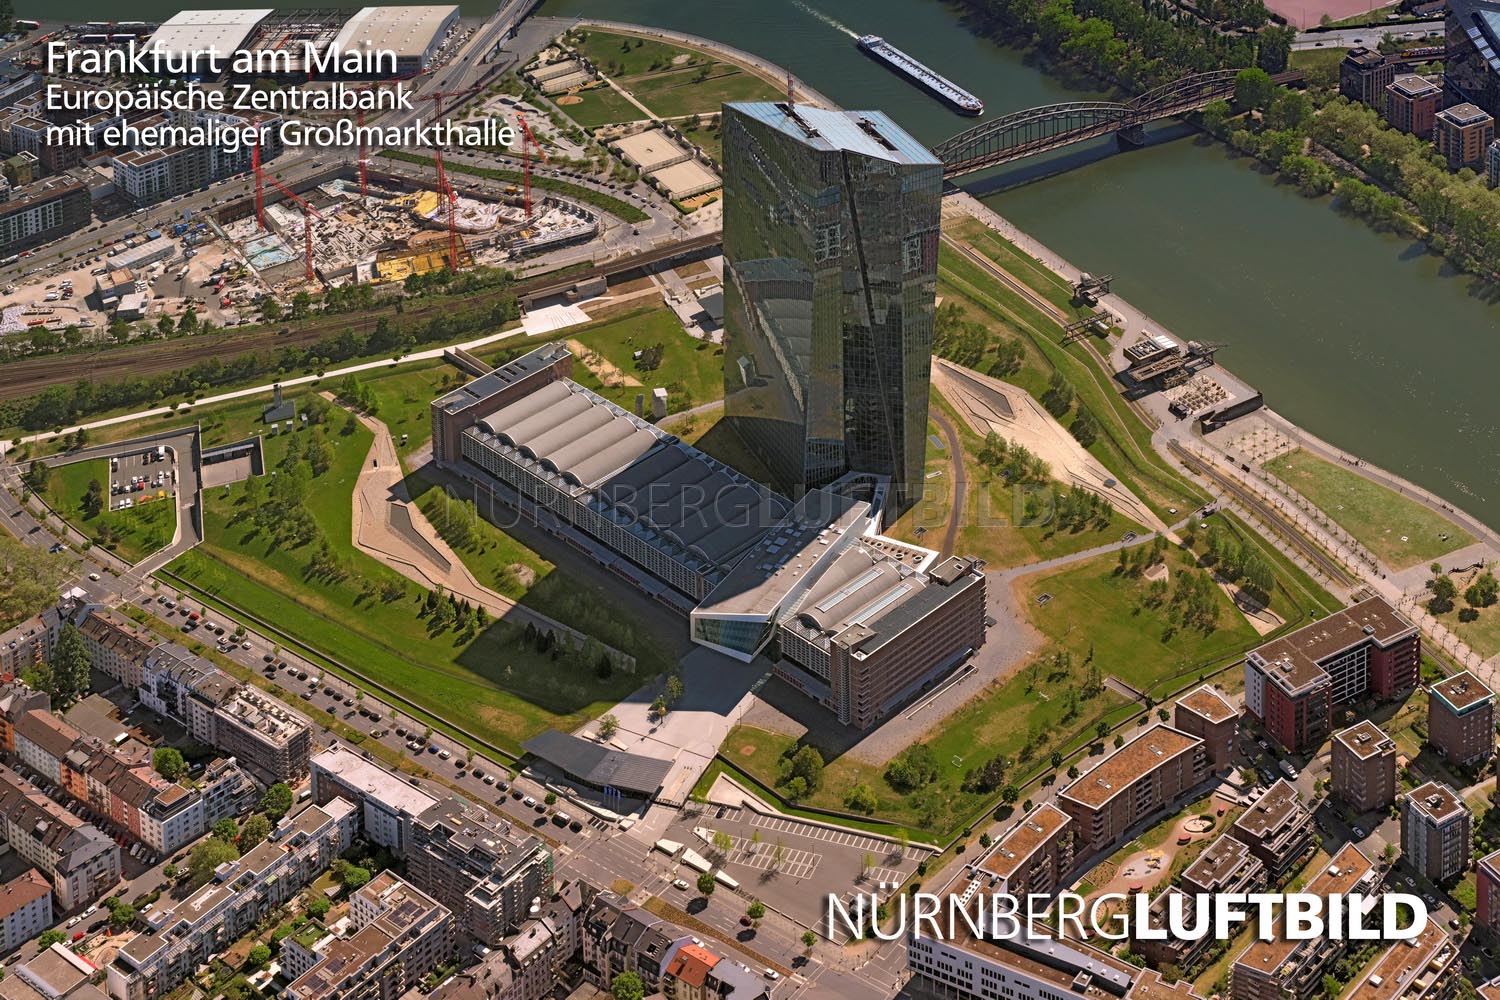 Frankfurt am Main, Europäische Zentralbank mit ehemaliger Großmarkthalle